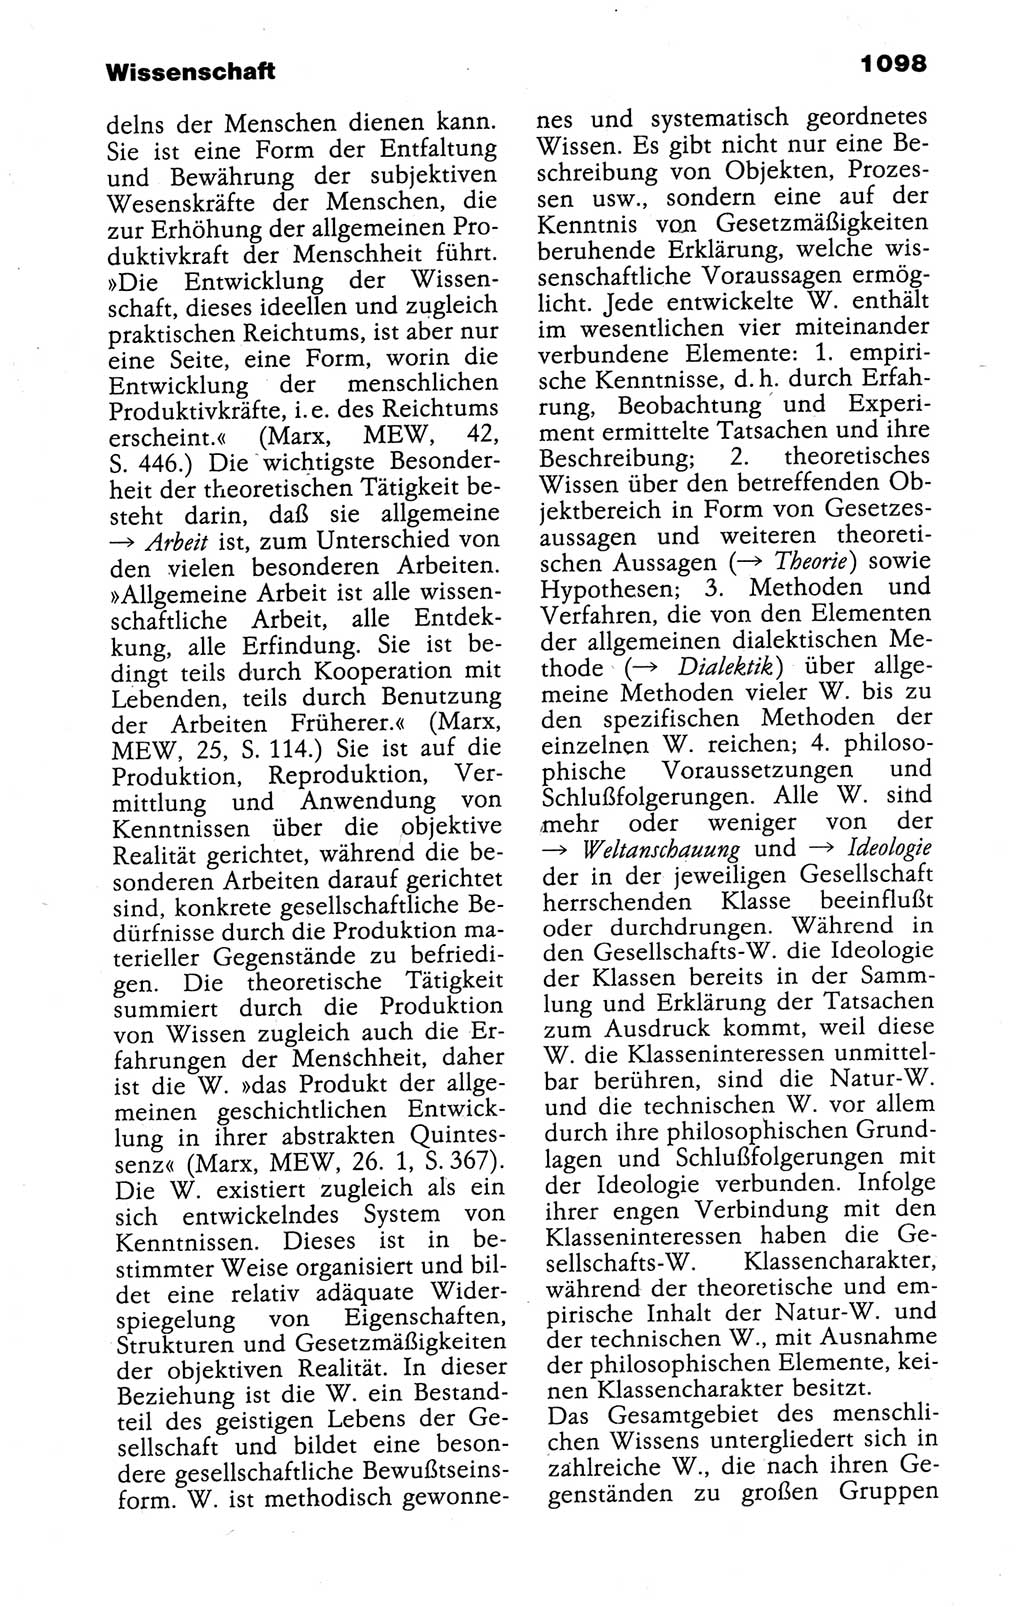 Kleines politisches Wörterbuch [Deutsche Demokratische Republik (DDR)] 1988, Seite 1098 (Kl. pol. Wb. DDR 1988, S. 1098)